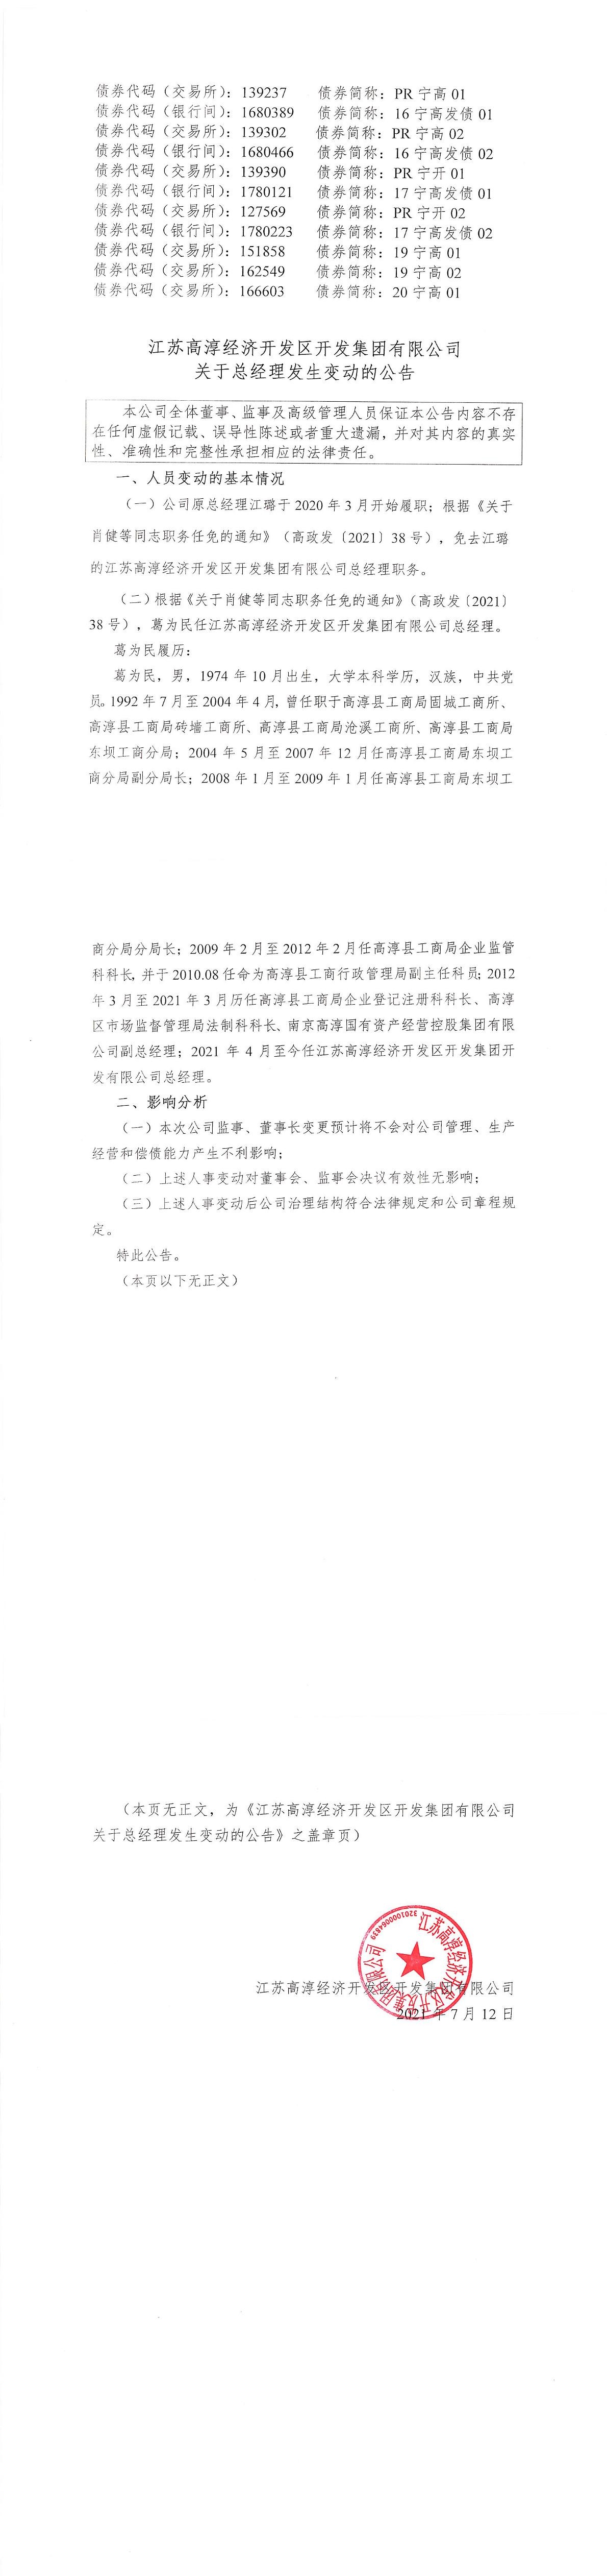 江苏高淳经济开发区开发集团有限公司关于总经理发生变动的公告